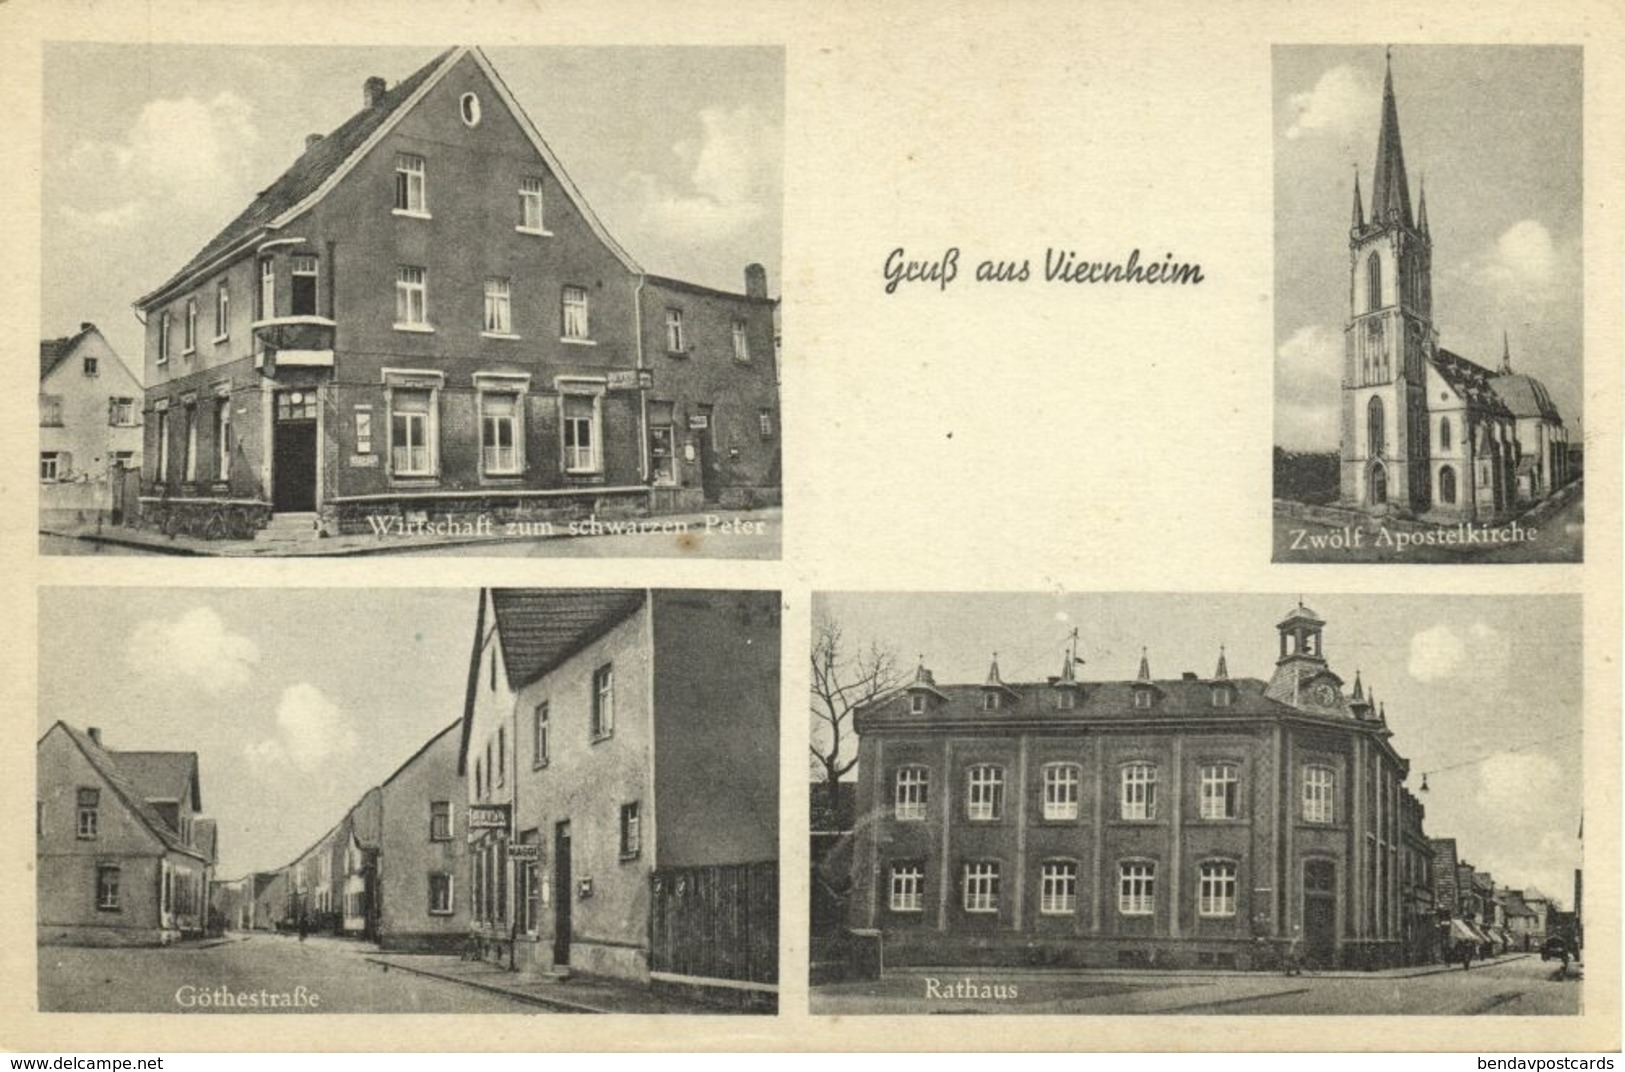 VIERNHEIM, Göthestraße, Wirtschaft Zum Schwarzen Peter, Rathaus (1930s) AK - Viernheim